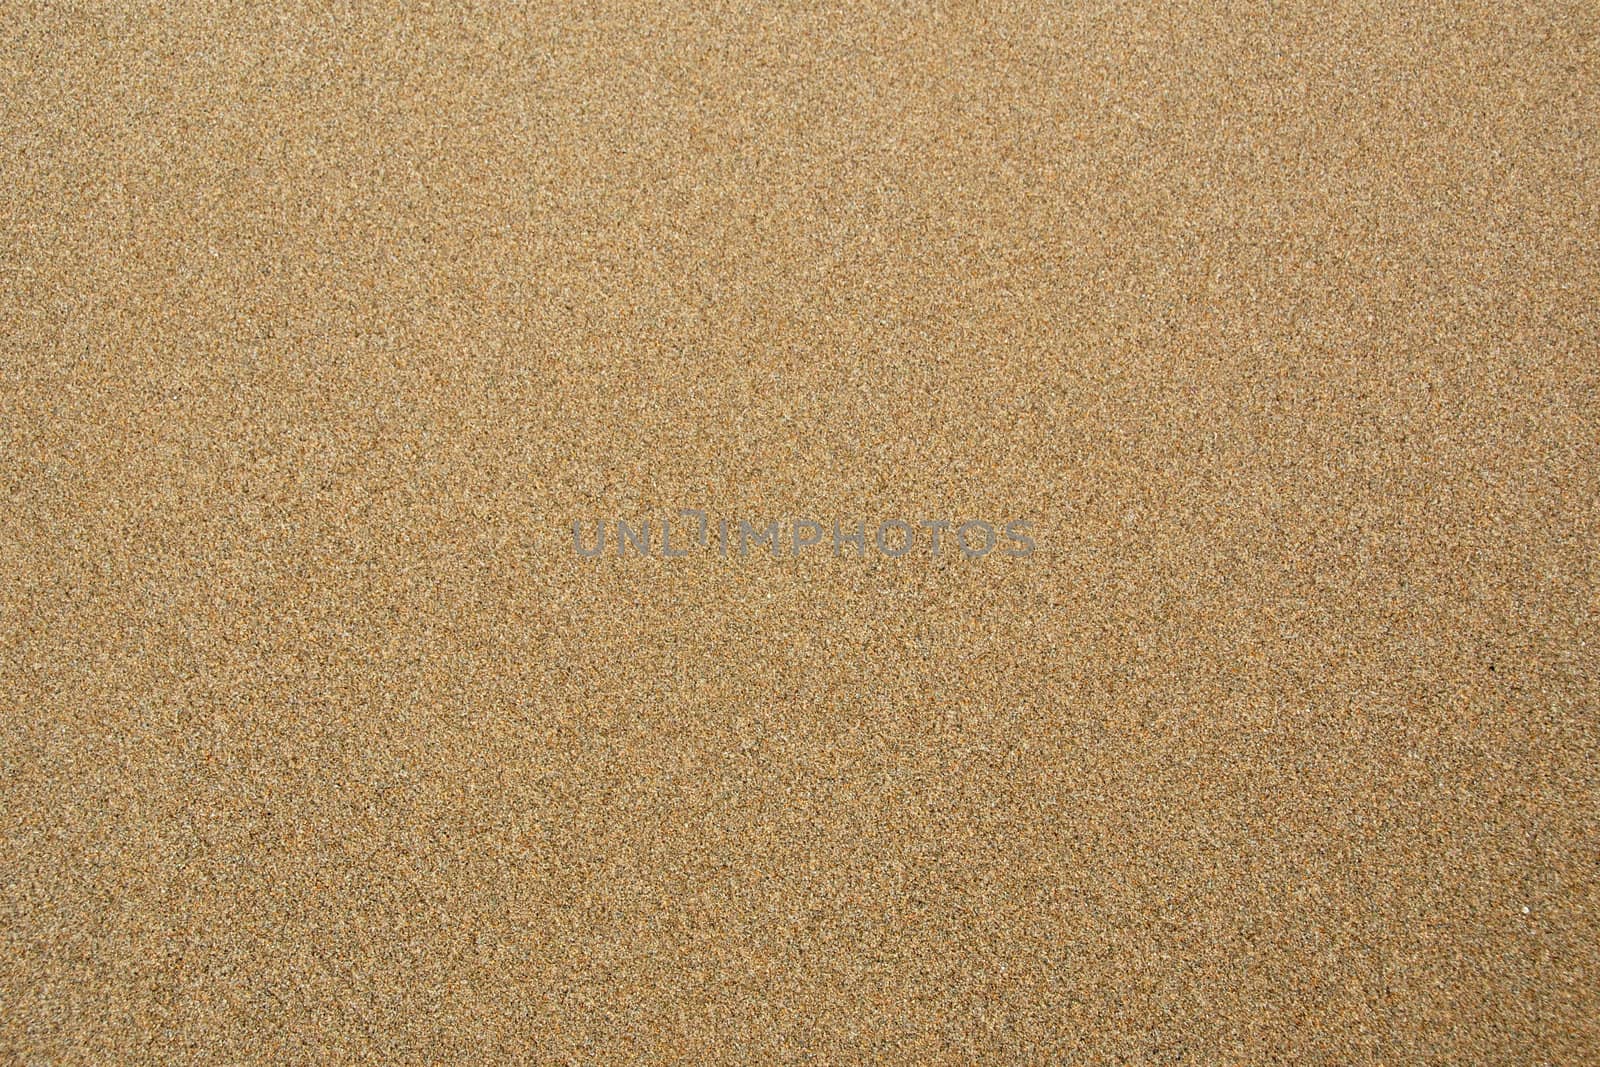 Sand texture by Gjermund